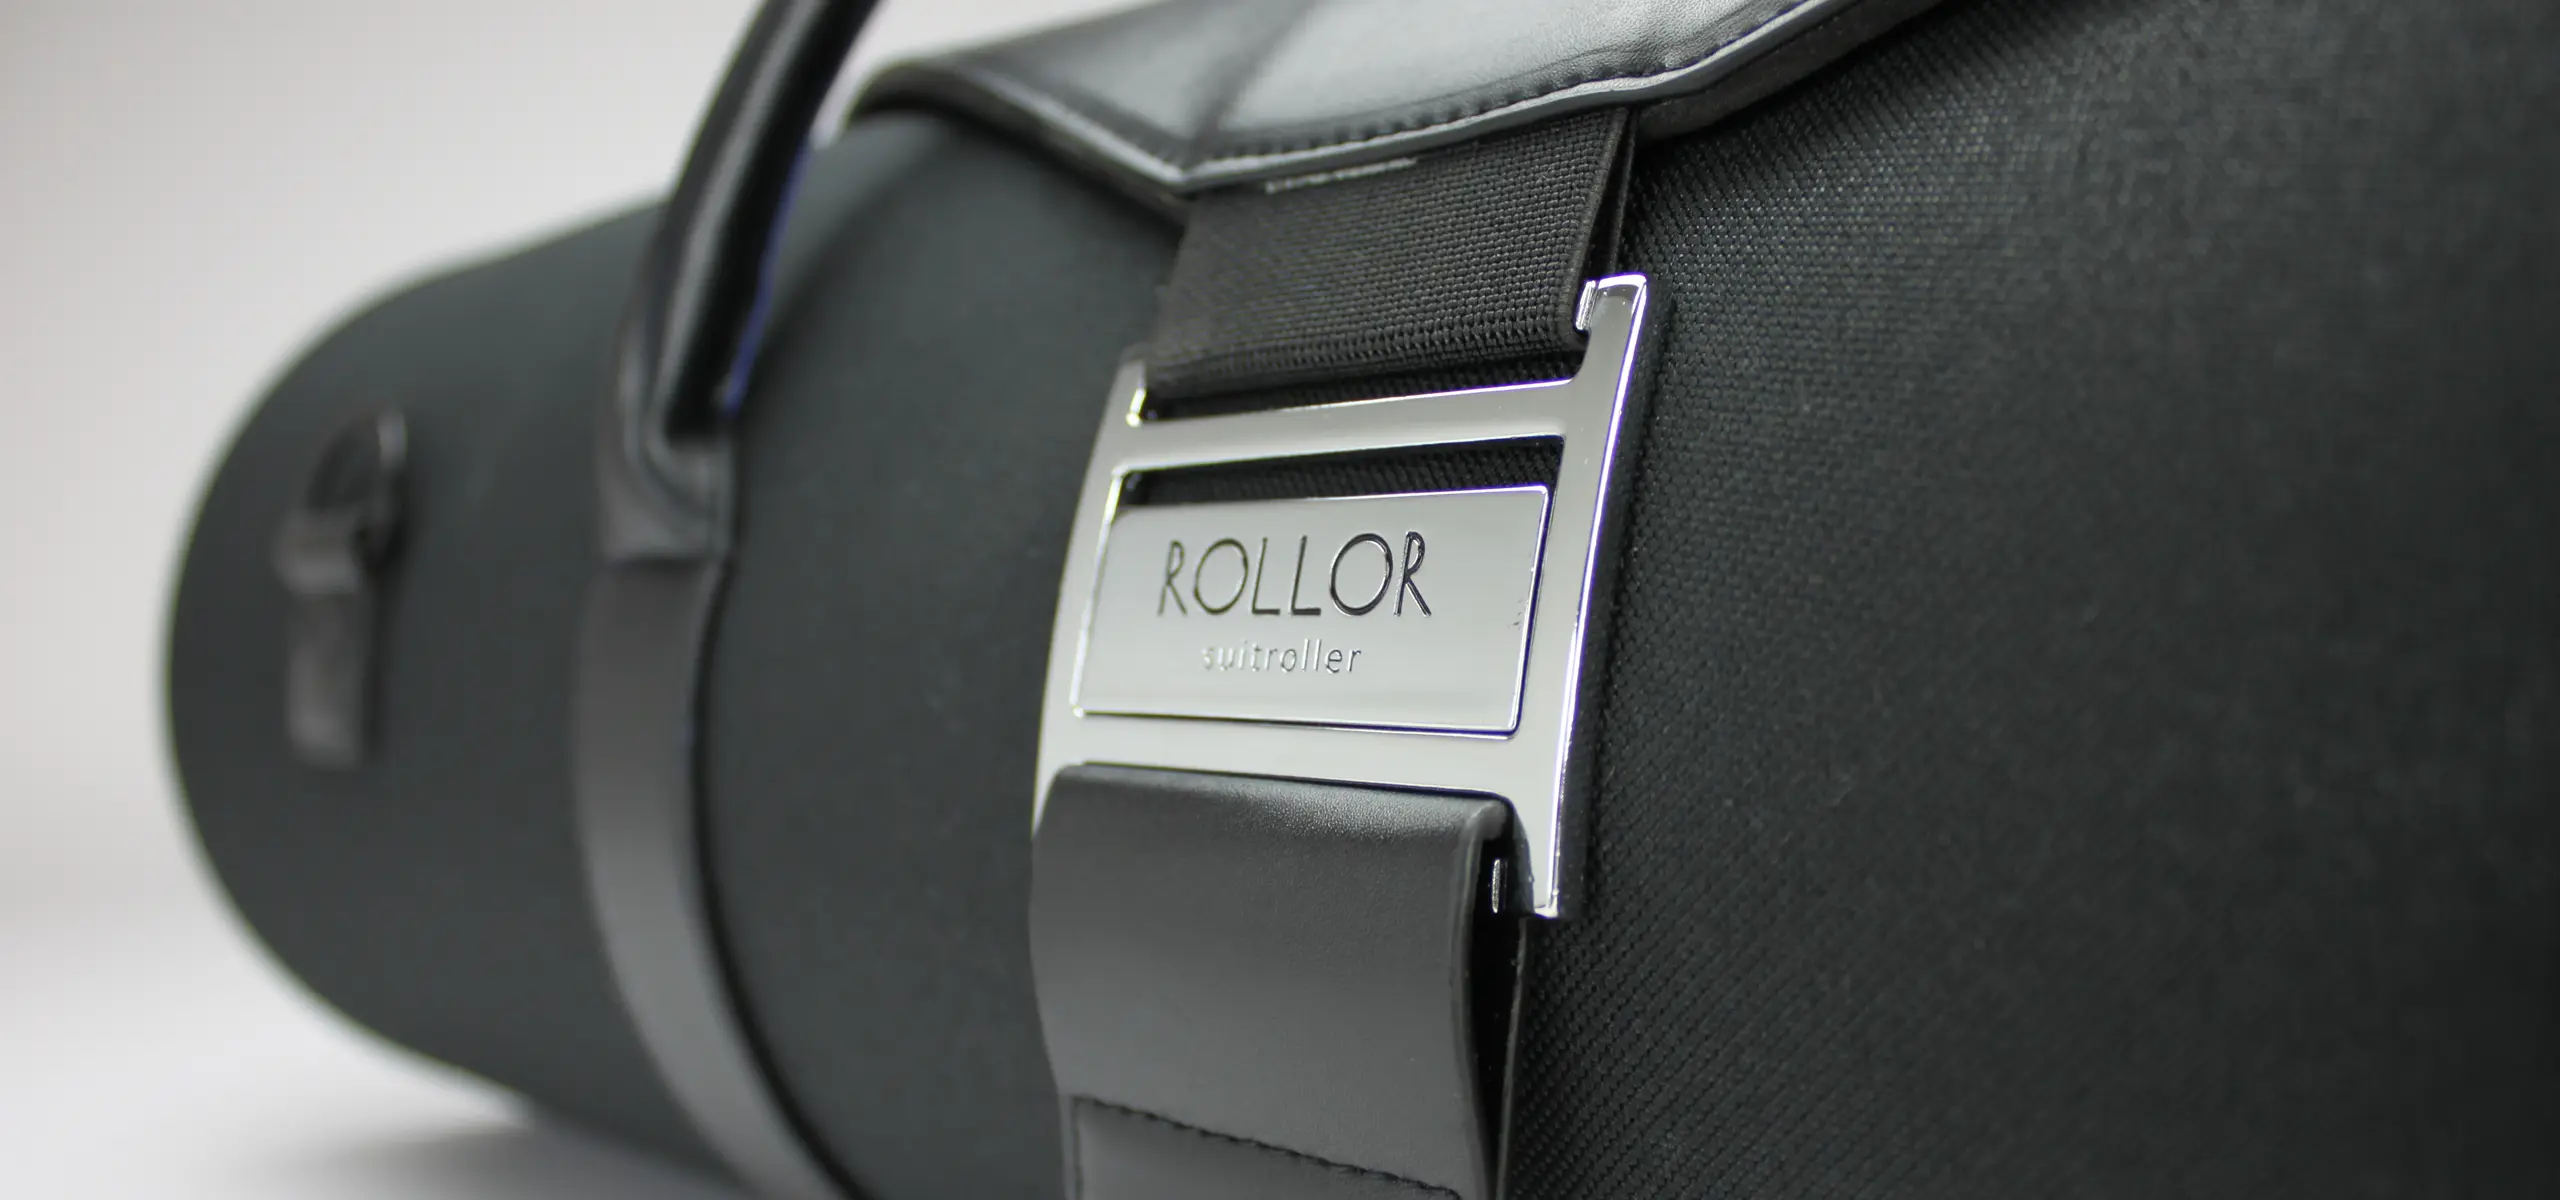 Rollor garment bag close-up design